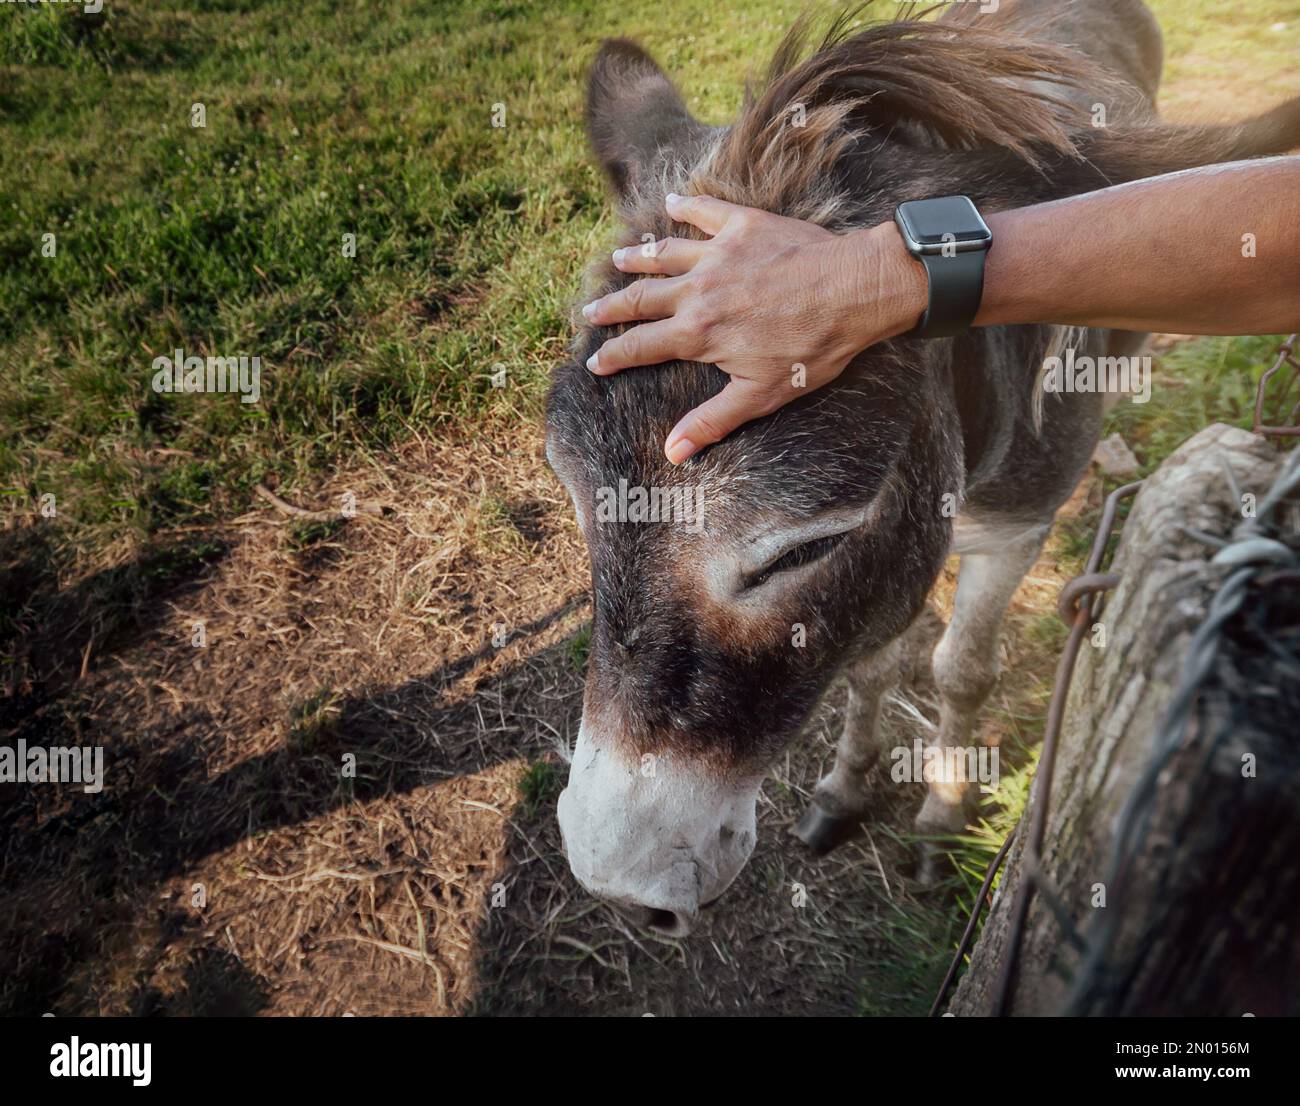 Die Hand einer Person im Vordergrund streichelt liebevoll den Kopf eines Esels in Freiheit. Konzept der Pflege und des Tierschutzes. Okologie und Envir Stockfoto